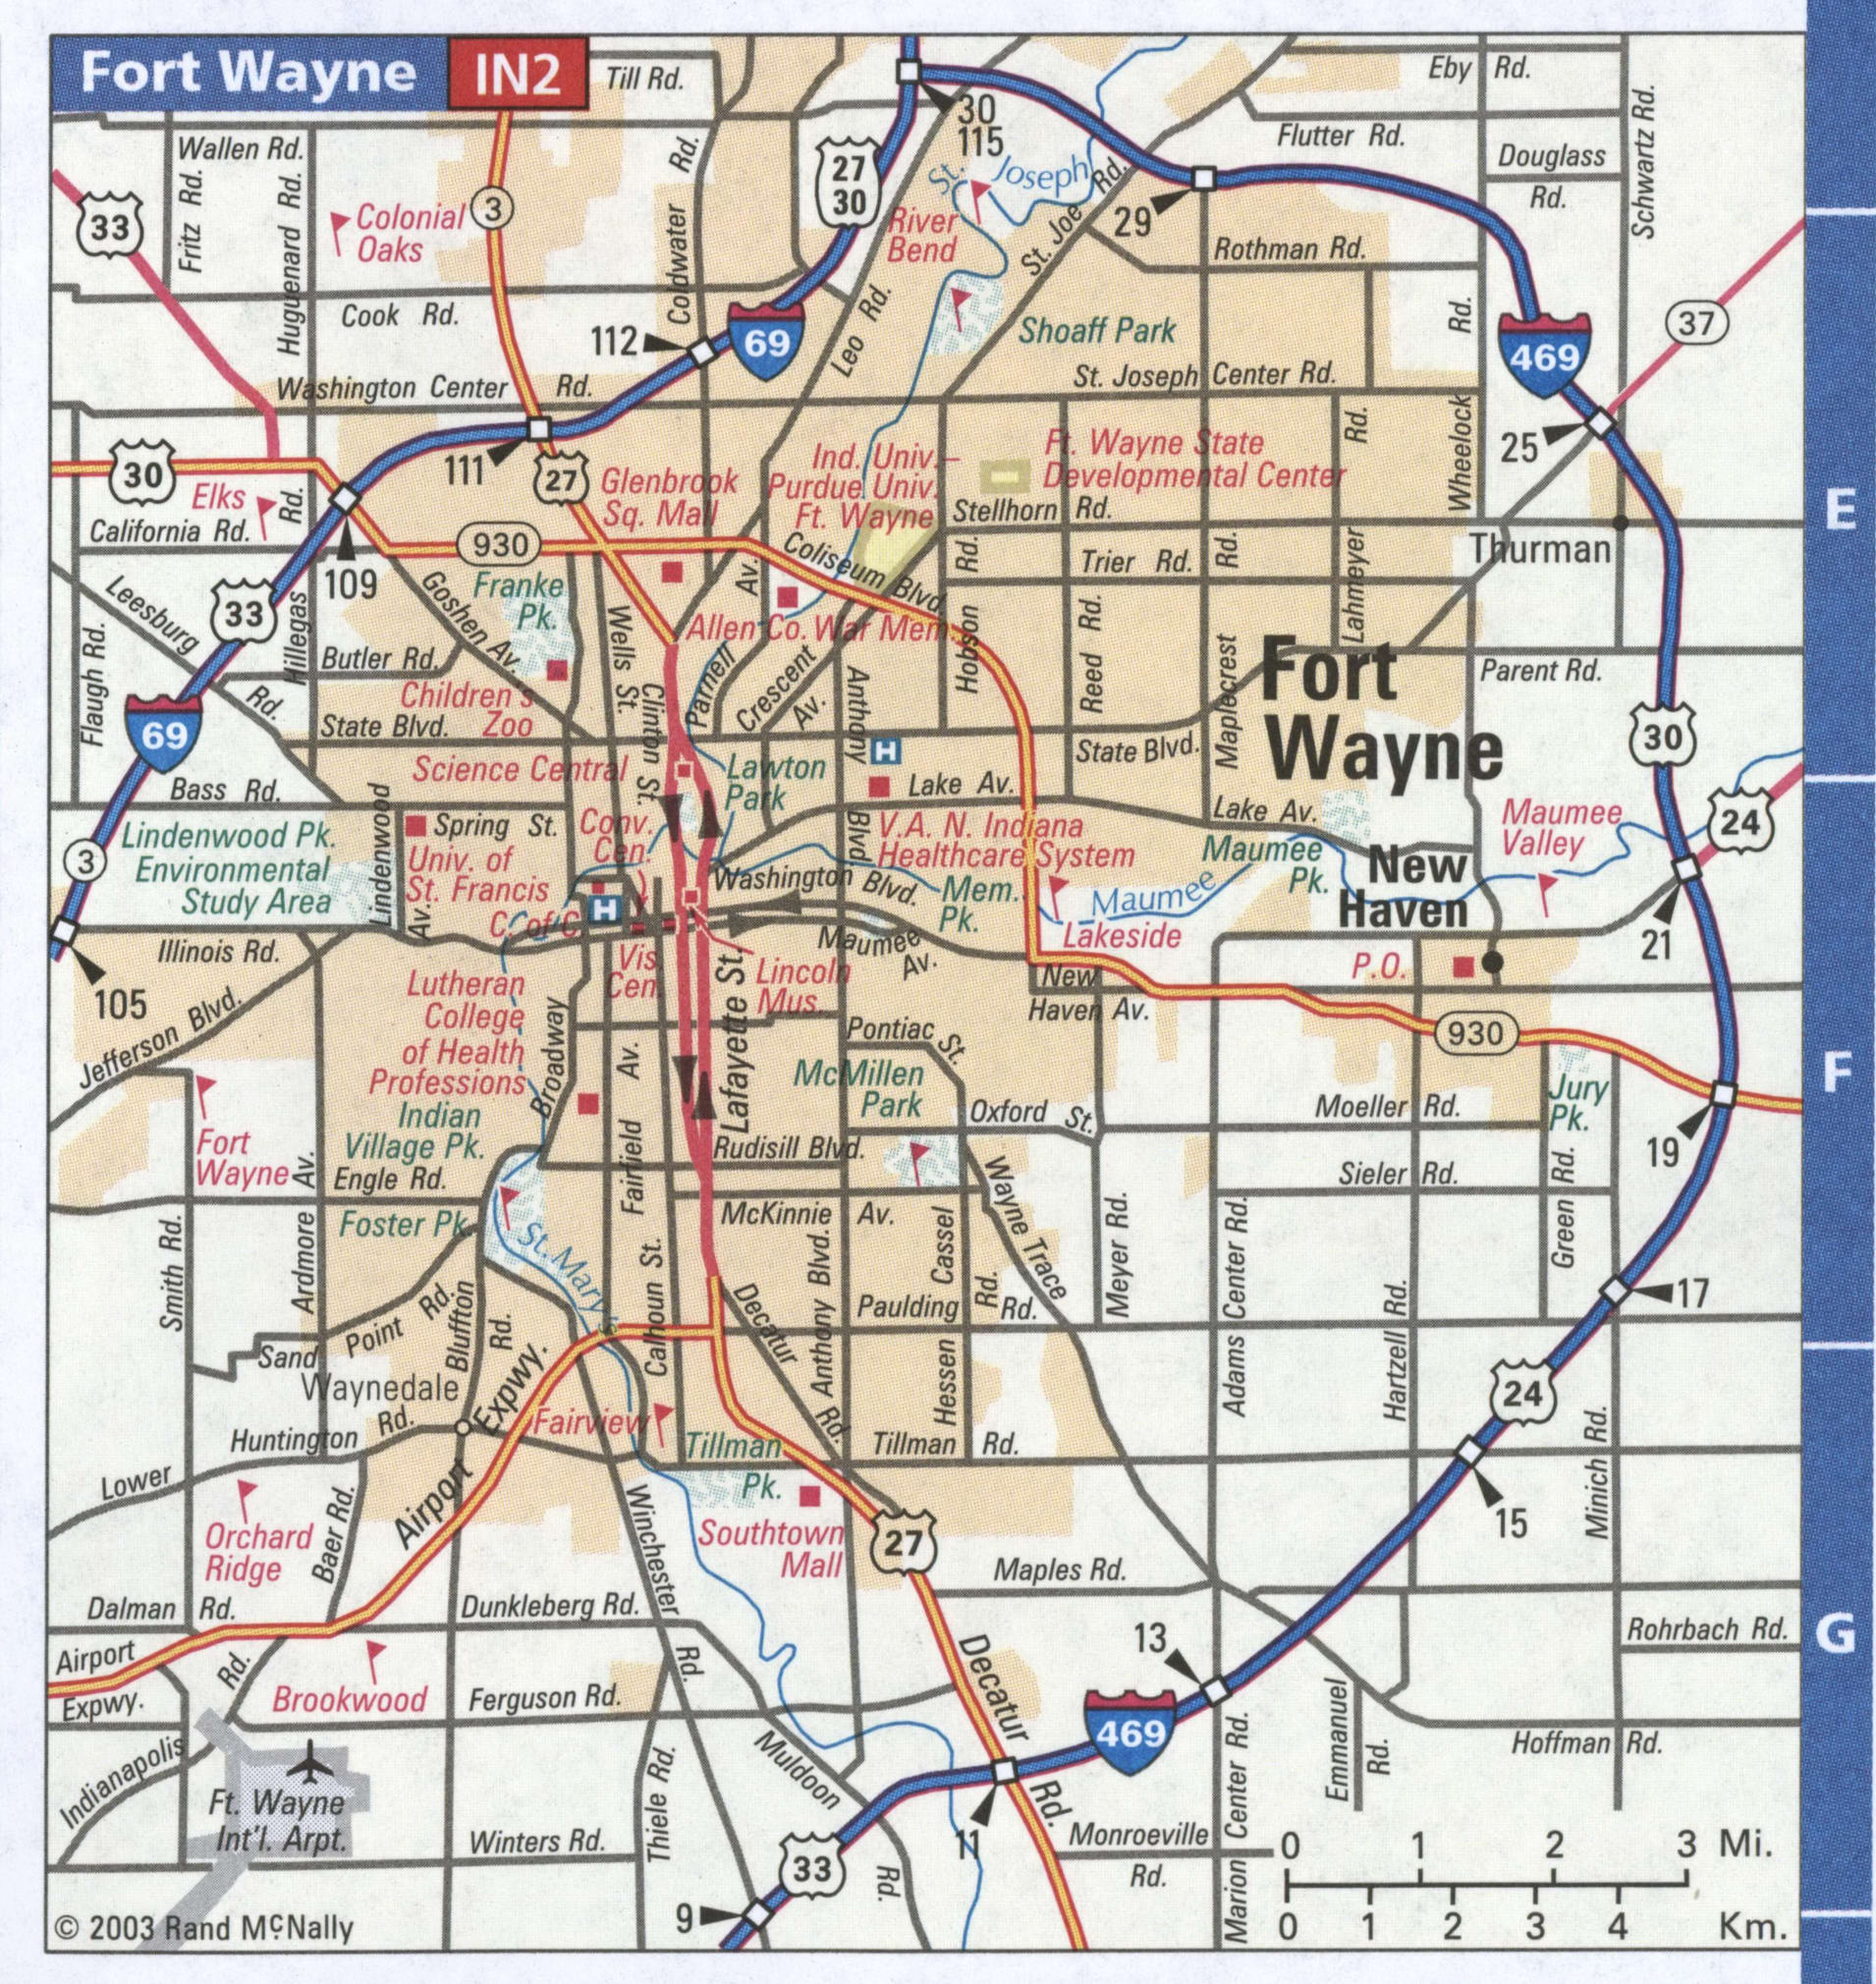 Fort Wayne IN road map